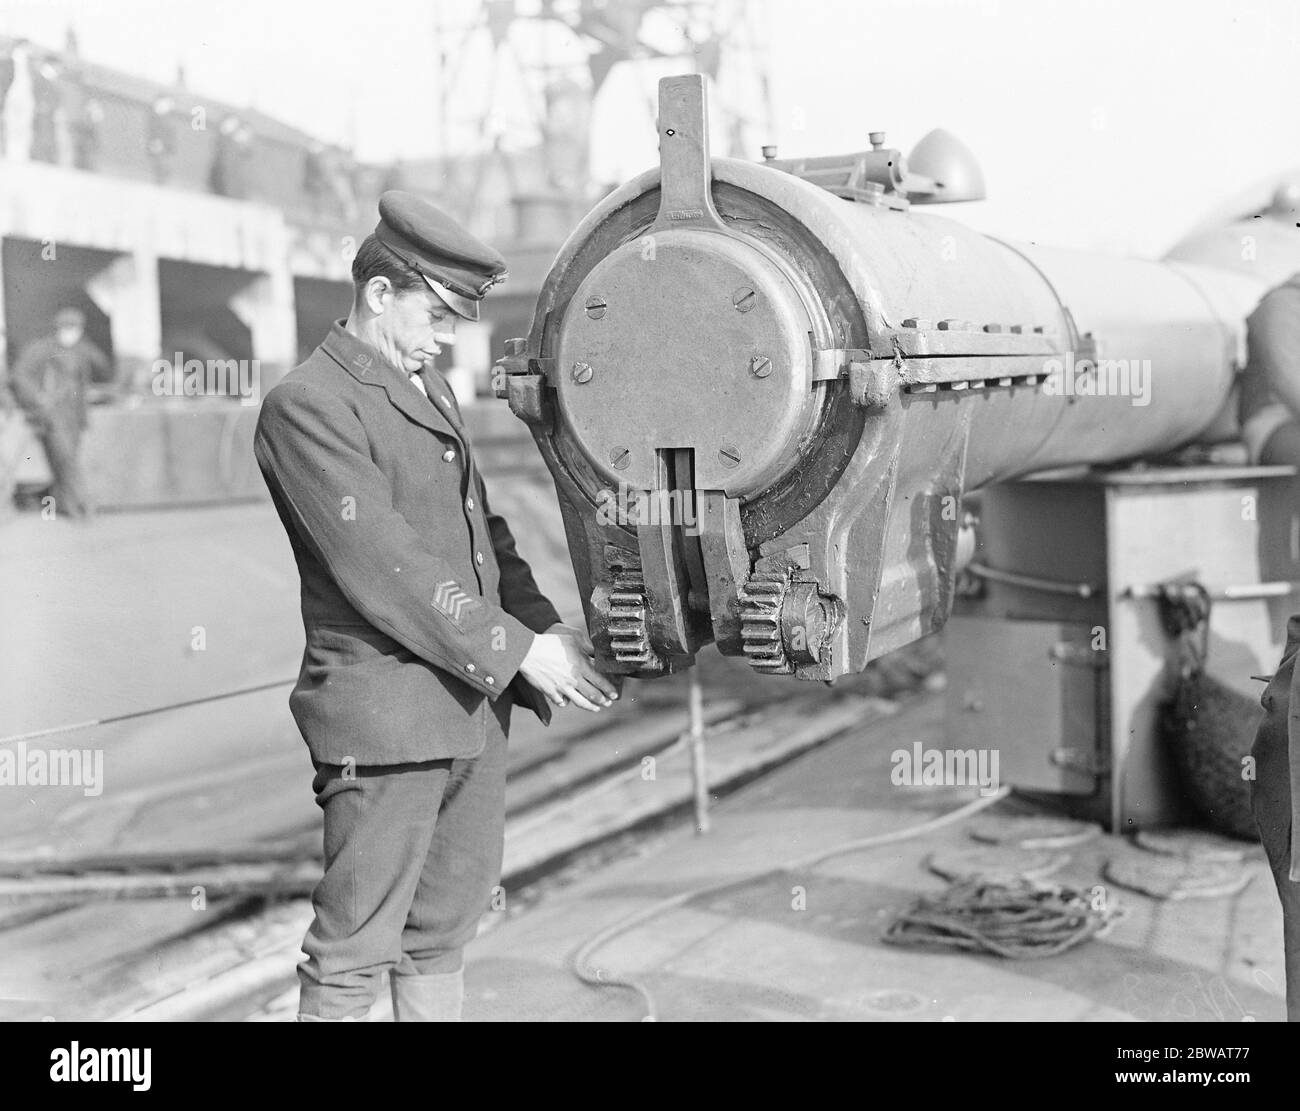 HMS sous-marin n° 3 un des membres de l'équipage inspectant le bouchon étanche à l'eau hydraulique qui s'adapte sur le museau du canon pendant la vaporisation ou la plongée 30 mars 1920 Banque D'Images